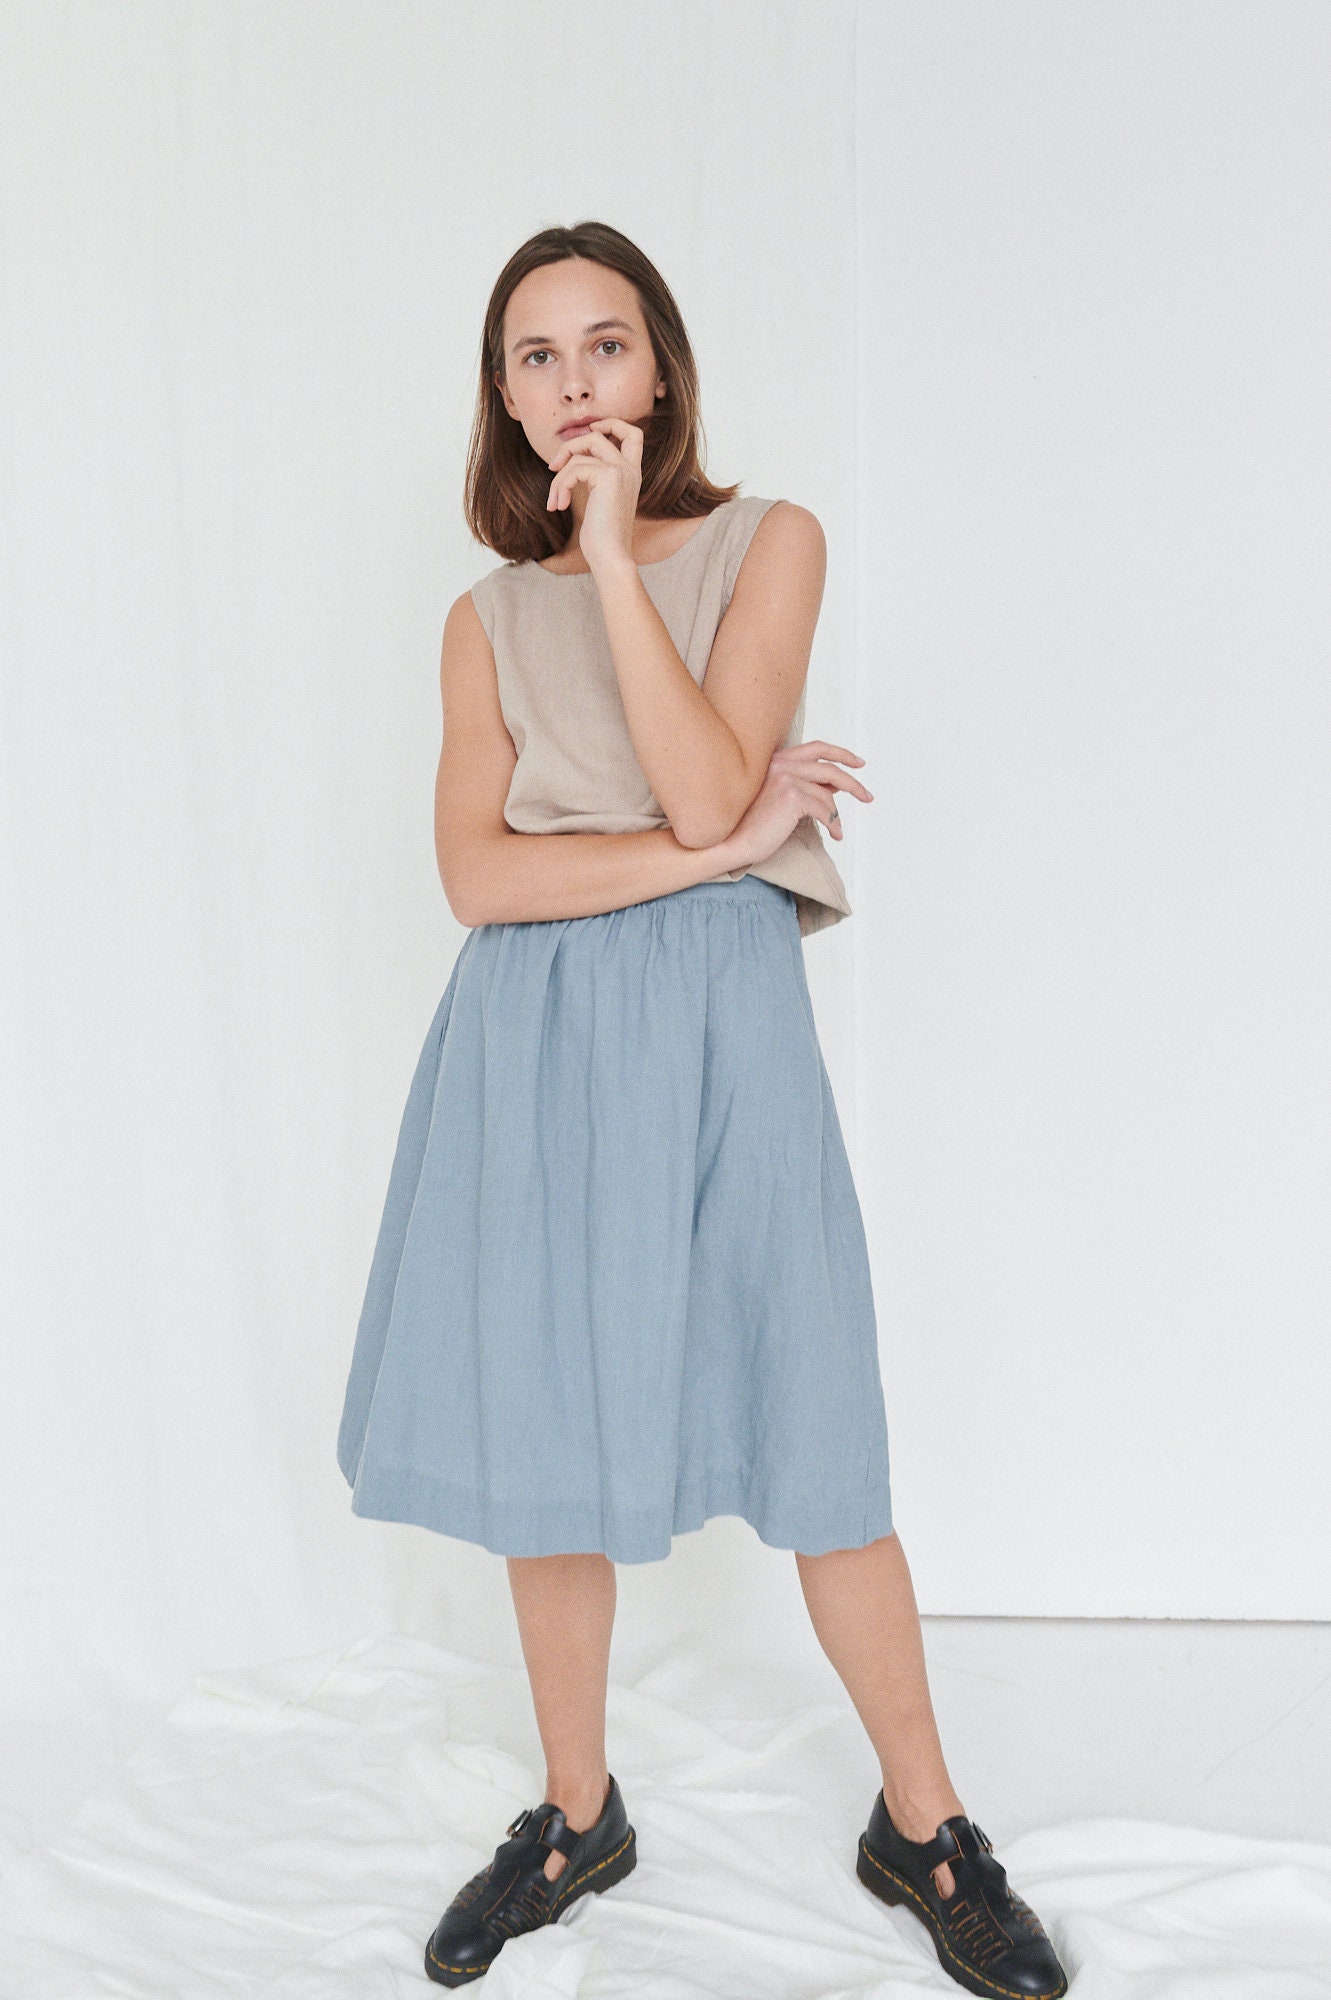 Laura Sea Green Skirt Midi Linen Skirt Linen Skirt A | Etsy